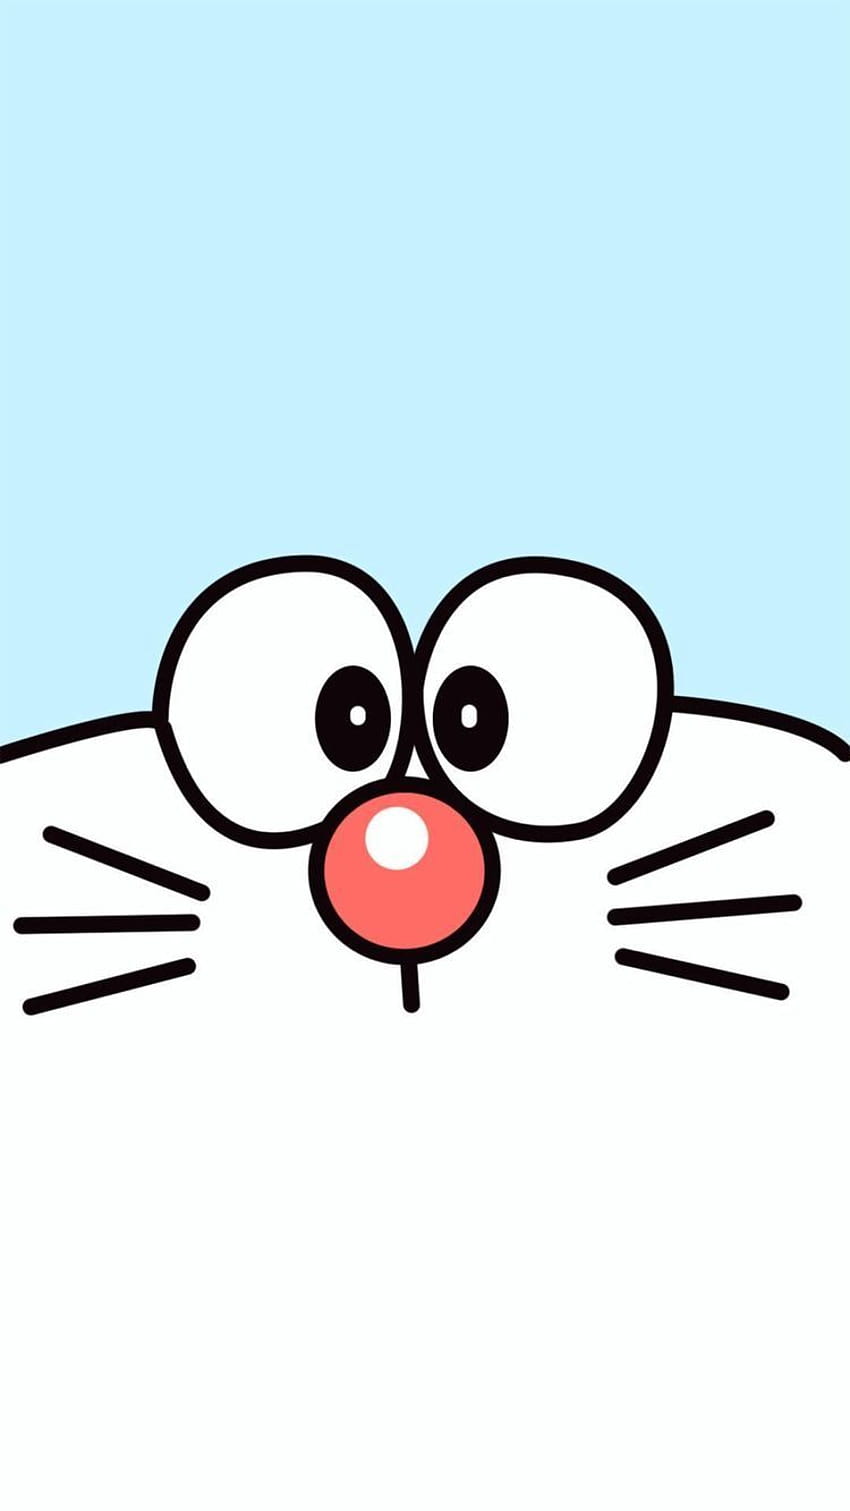 Hình nền iPhone X Doraemon sẽ khiến bạn cảm thấy đầy vui vẻ và tươi cười mỗi khi bật điện thoại lên. Những hình ảnh đáng yêu với nhân vật hoạt hình nổi tiếng này sẽ đem đến cho bạn cảm giác thoải mái và nhẹ nhàng.